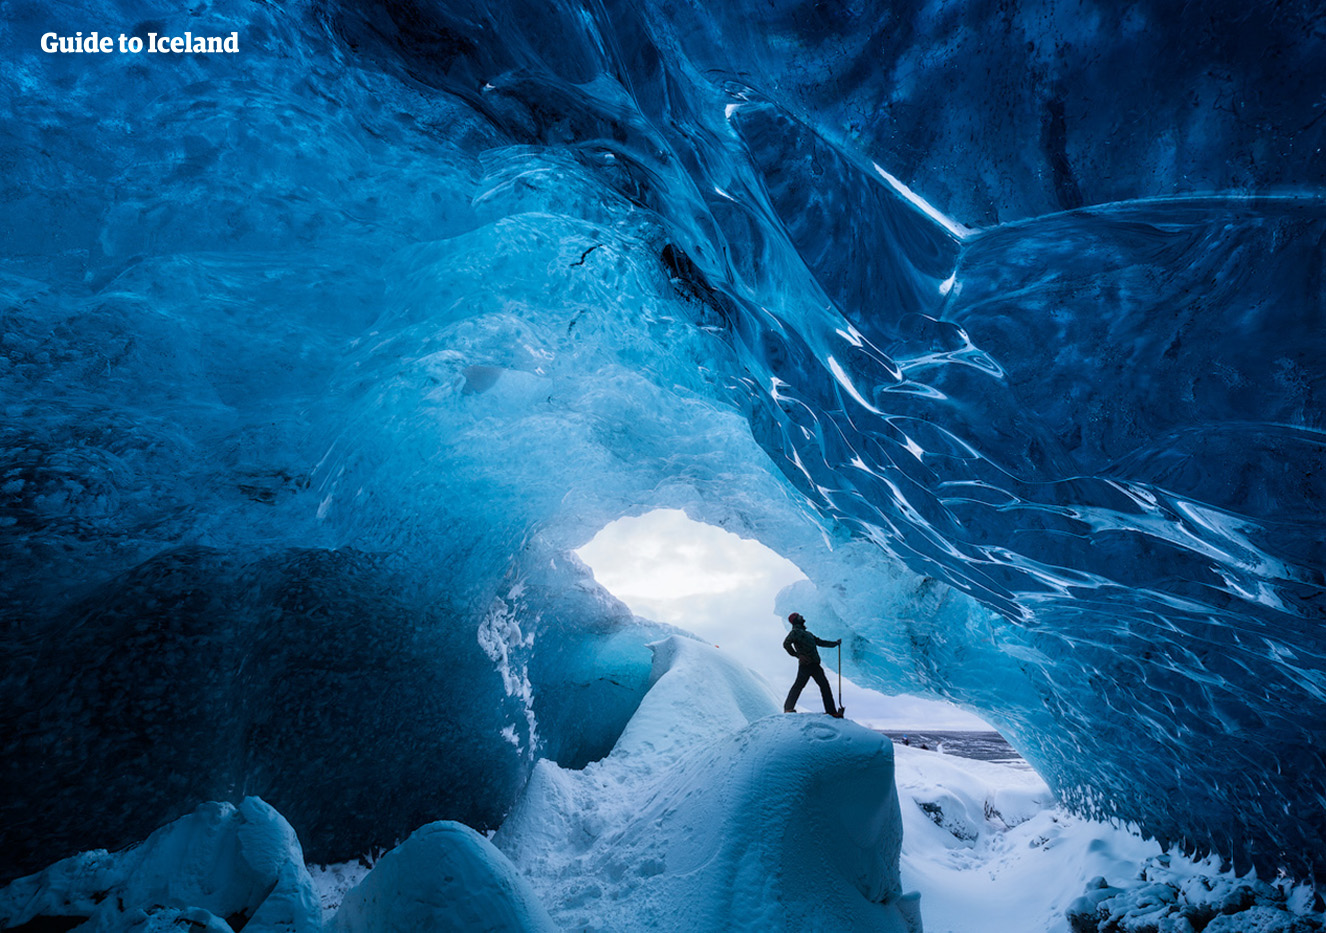 얼음동굴 방문은 아이슬란드에서 할 수 있는 아주 특별한 경험 중 하나입니다